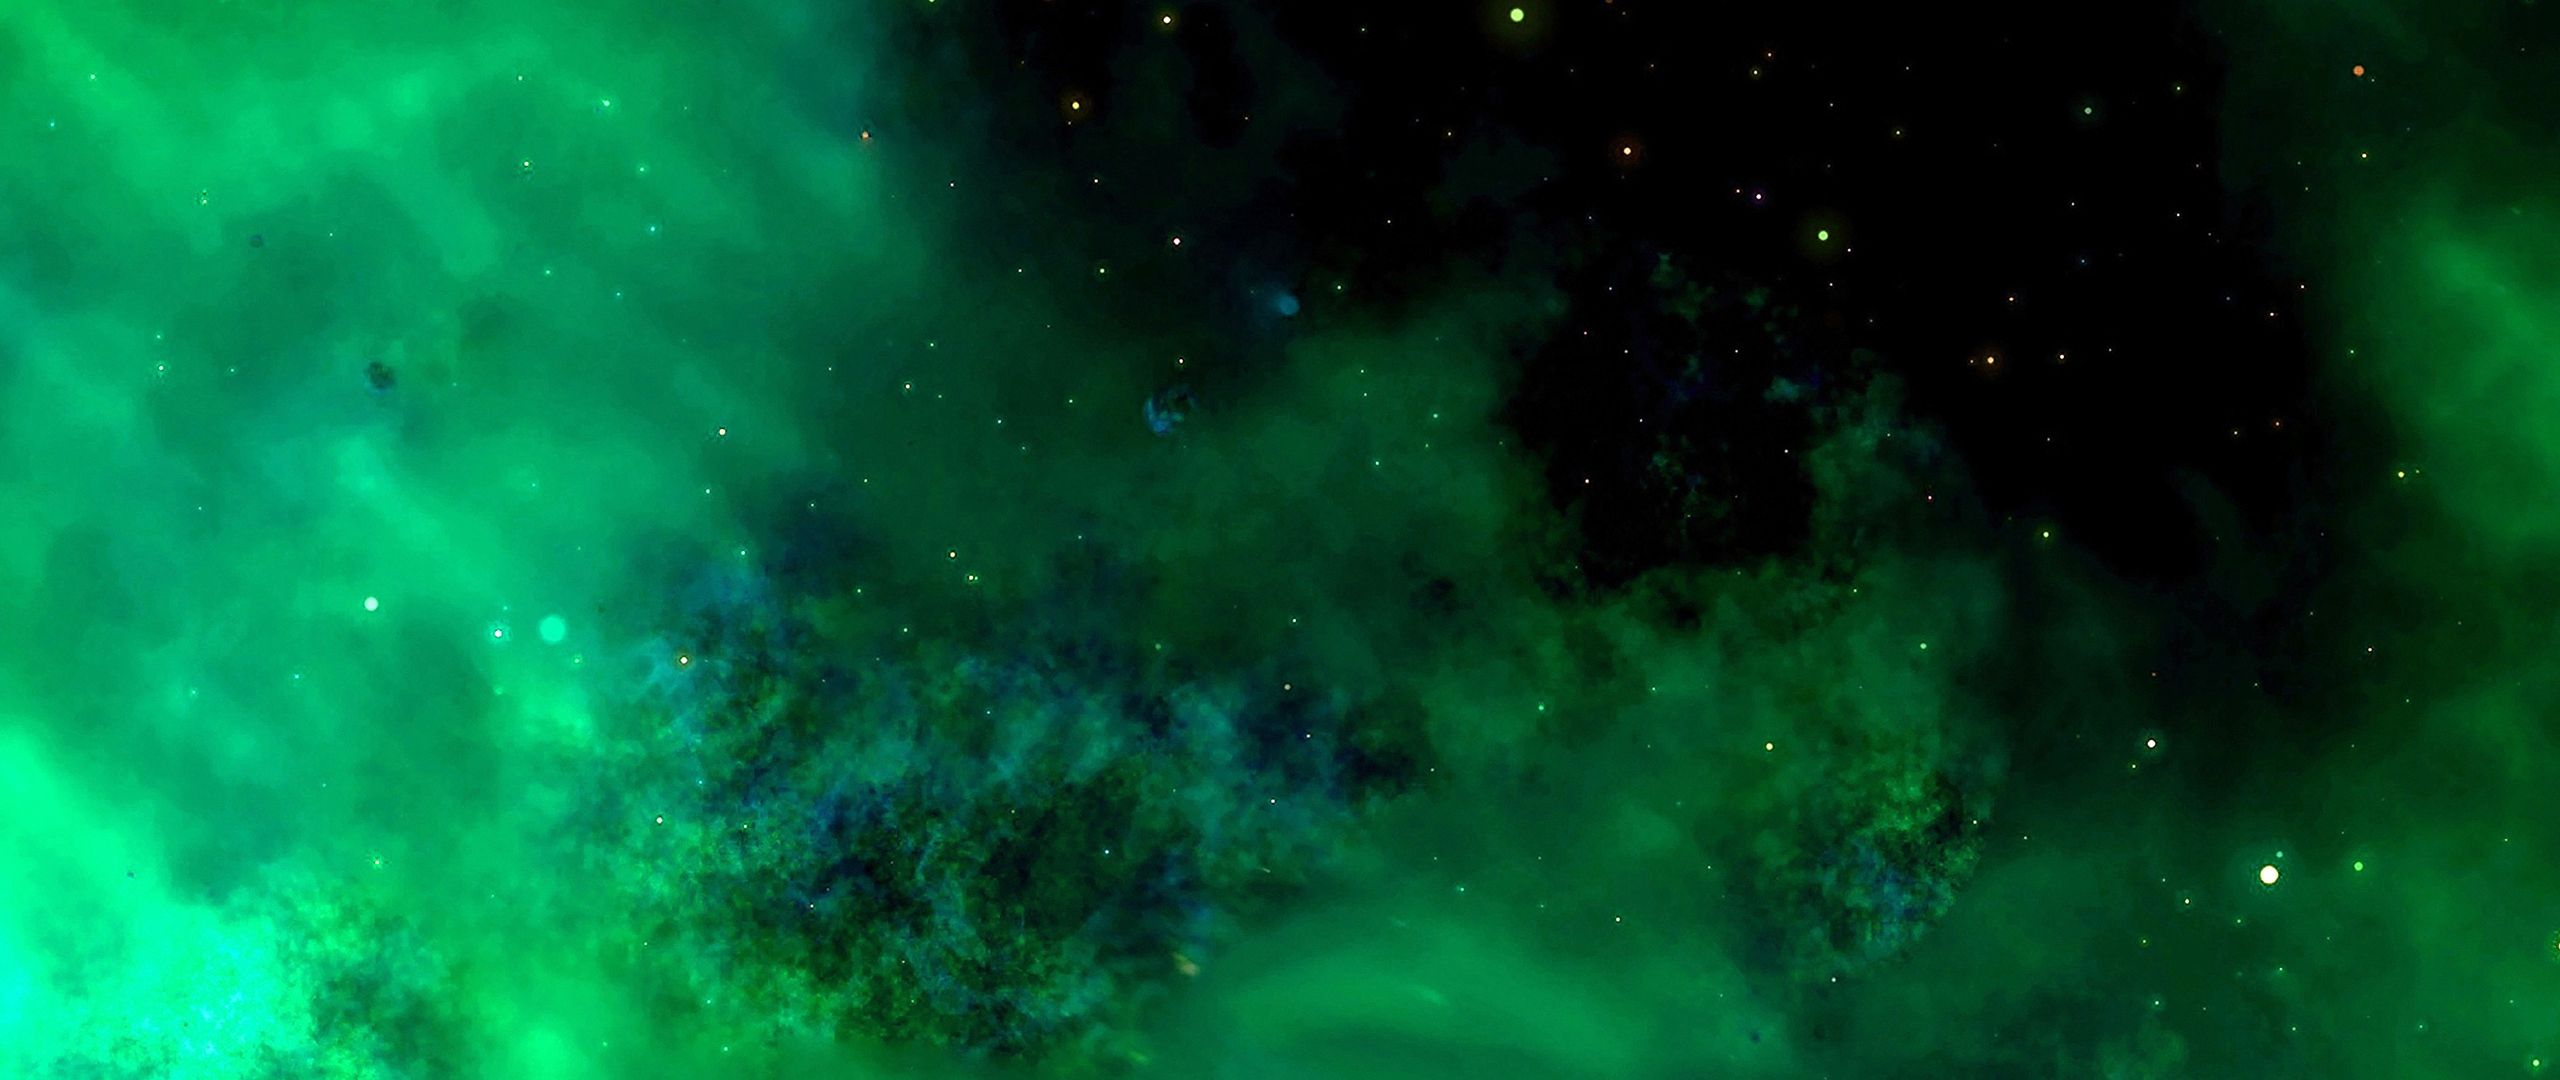 Hình nền galaxy màu xanh lá cây là sự kết hợp hoàn hảo giữa vẻ đẹp của thiên nhiên và không gian vũ trụ bao la. Với màu xanh lá cây tươi sáng lấp lánh, hình nền này đem lại cho bạn trải nghiệm huyền ảo mà rất ít hình nền có thể mang lại.